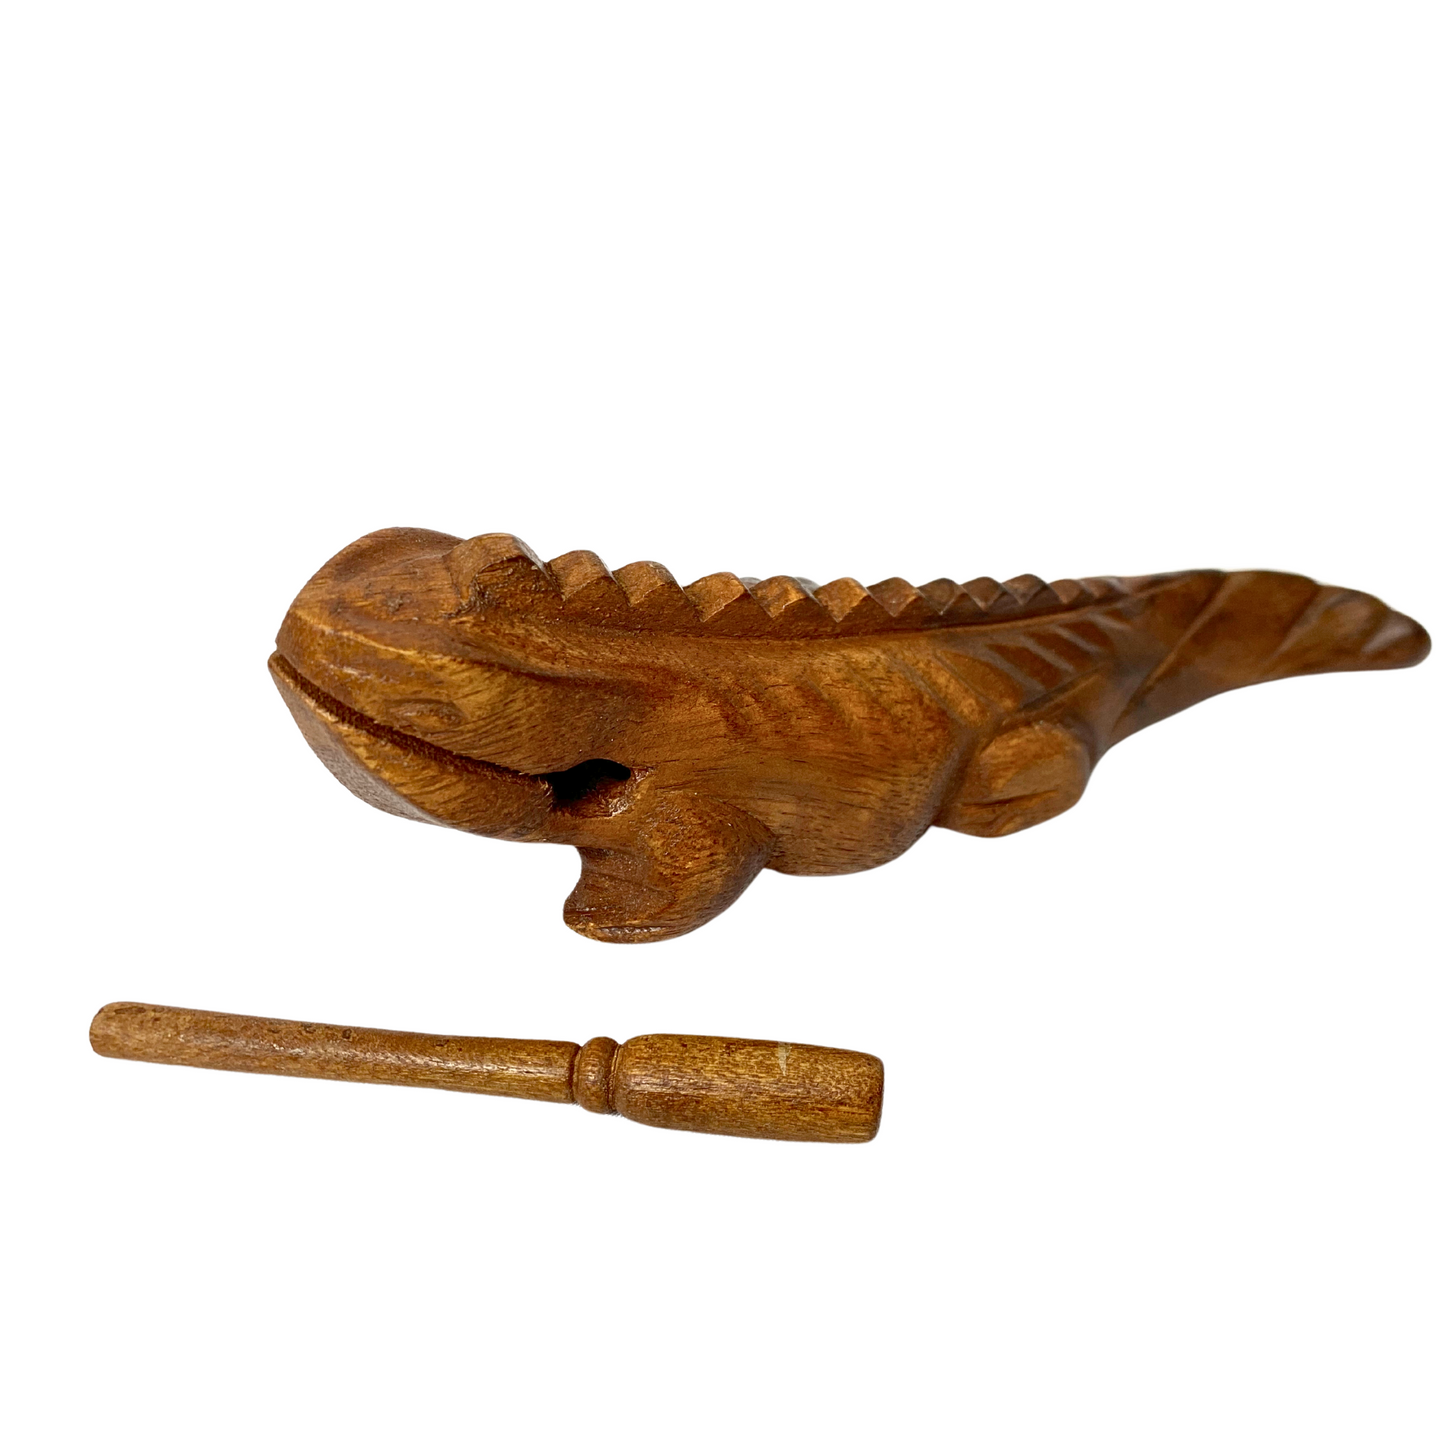 Wooden Iguana Guiro with Scraper, 8" - B-IGU8L